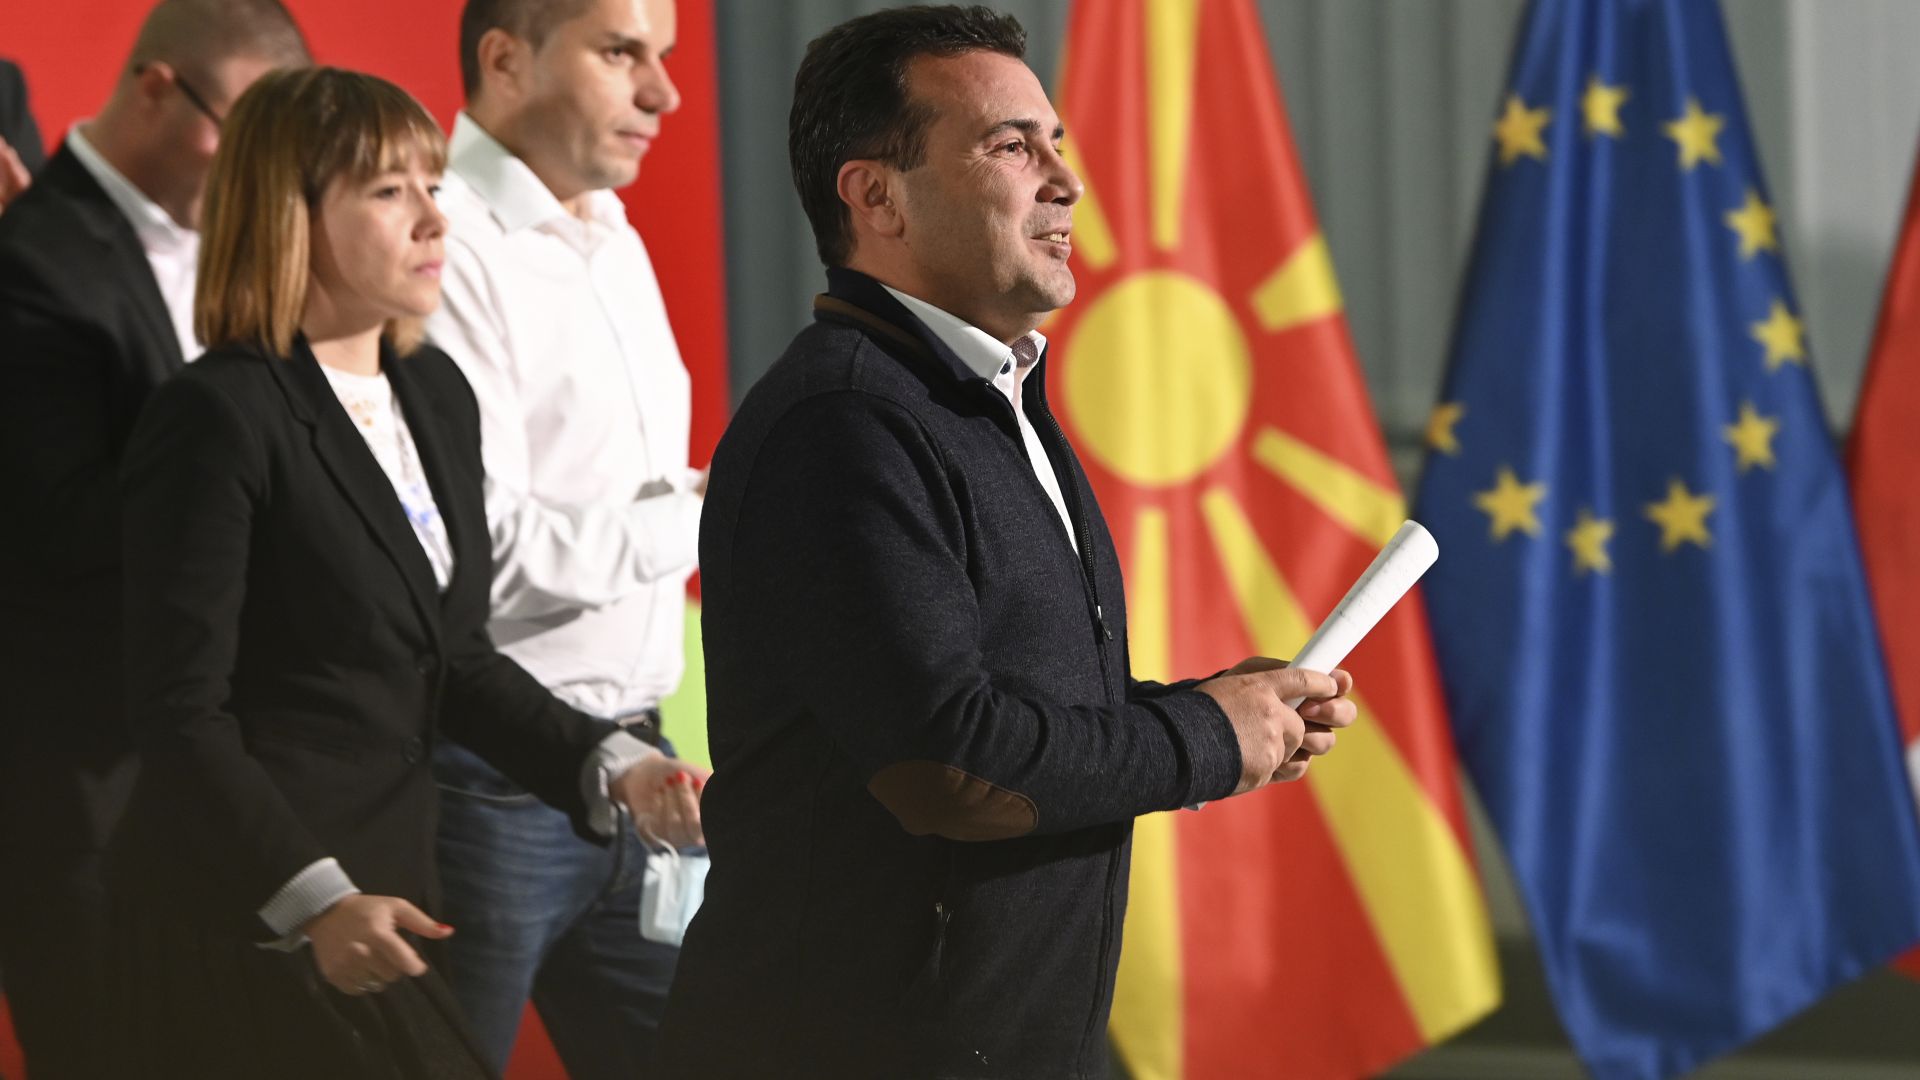 Заев и Мицкоски не споменаха участието на българската армия в освобождаването на Скопие